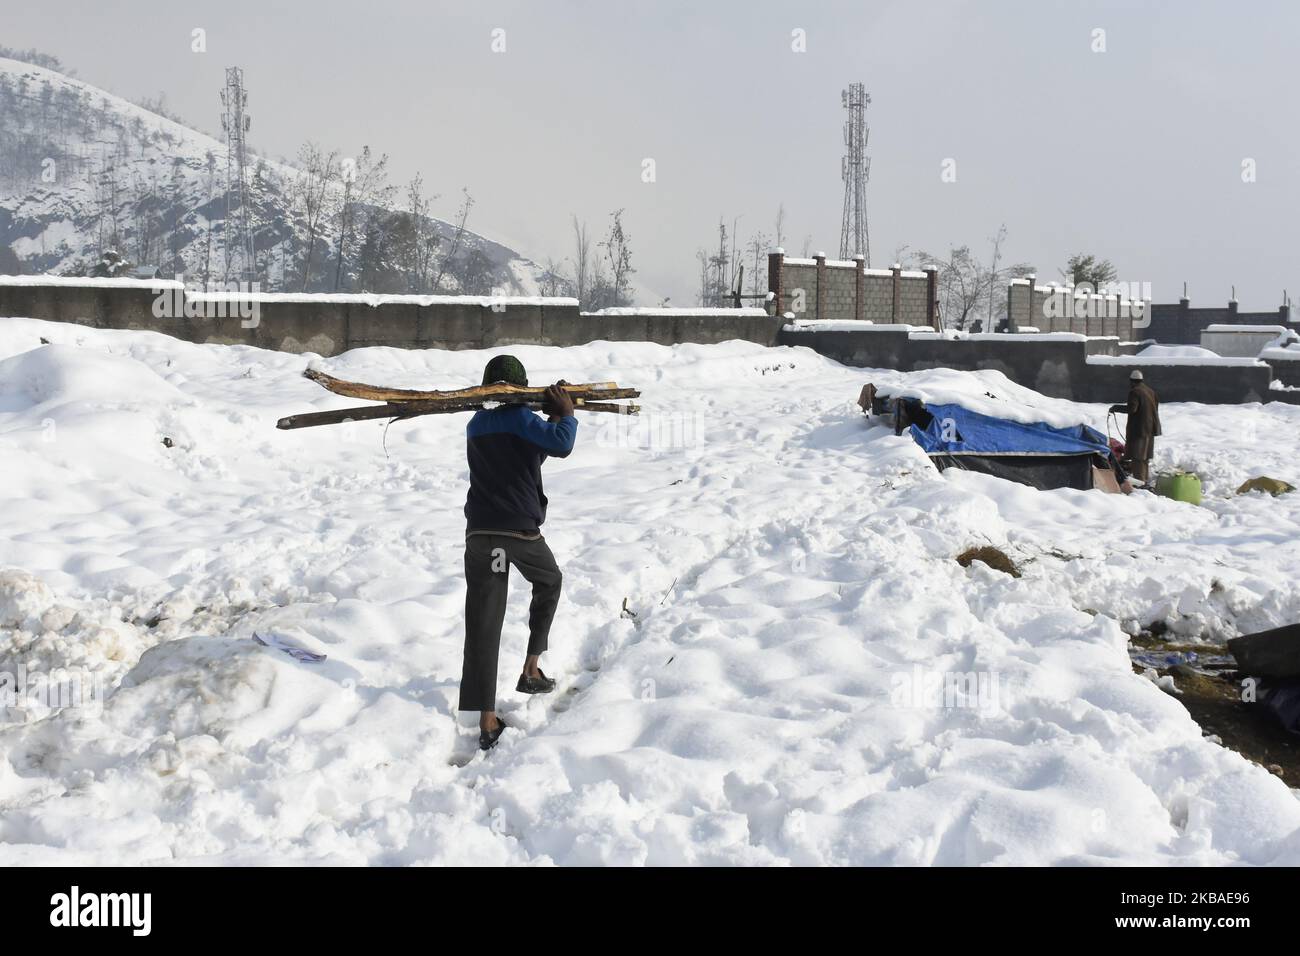 Nomad-Leute räumen das provisorische Zelt, nachdem es am 08. November 2019 durch starken Schneefall in den Außenbezirken von Srinagar, dem indischen kaschmir, beschädigt wurde. Das Kashmir-Tal erhielt am Donnerstag seinen ersten Schneefall, der an vielen Orten Sachschäden verursachte und sieben Menschen tötete. (Foto von Muzamil Mattoo/NurPhoto) Stockfoto